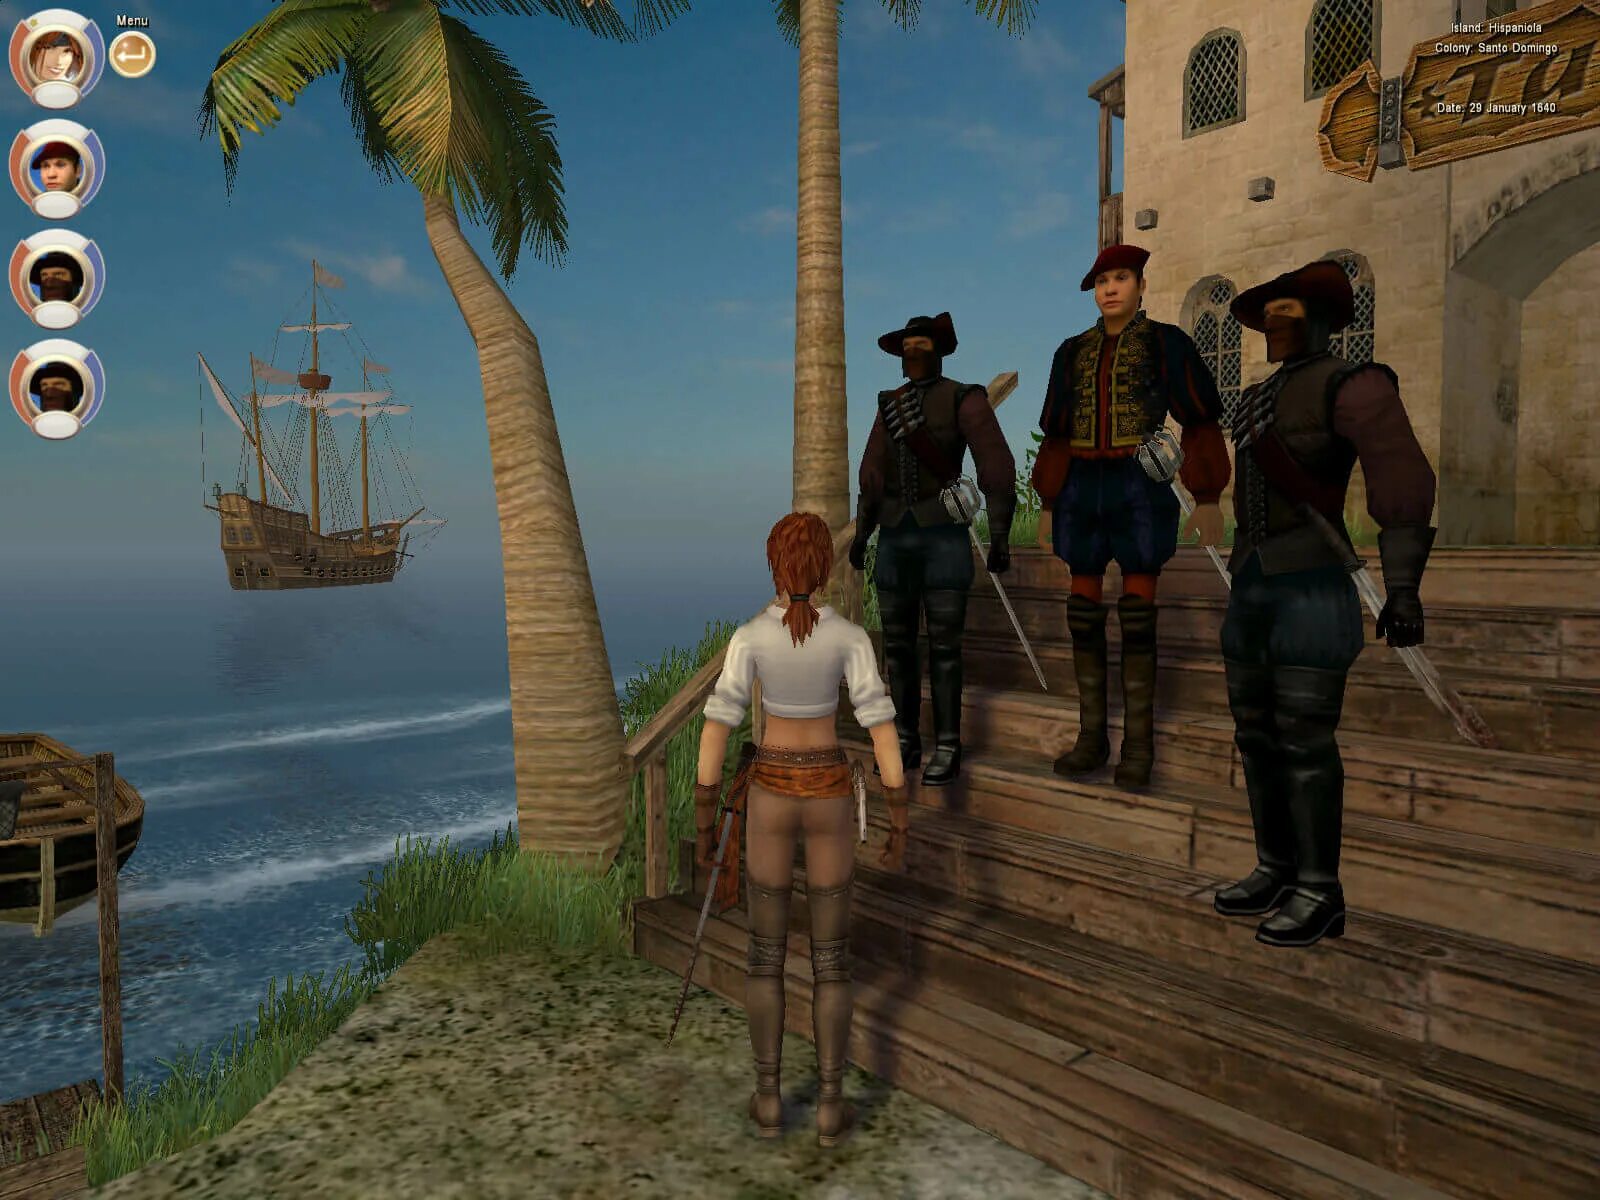 Корсары 3 пираты Карибского моря. Корсары III (2005). Age of Pirates: Caribbean Tales игра. Натаниэль Хаук Корсары 2. Топ игр про пиратов